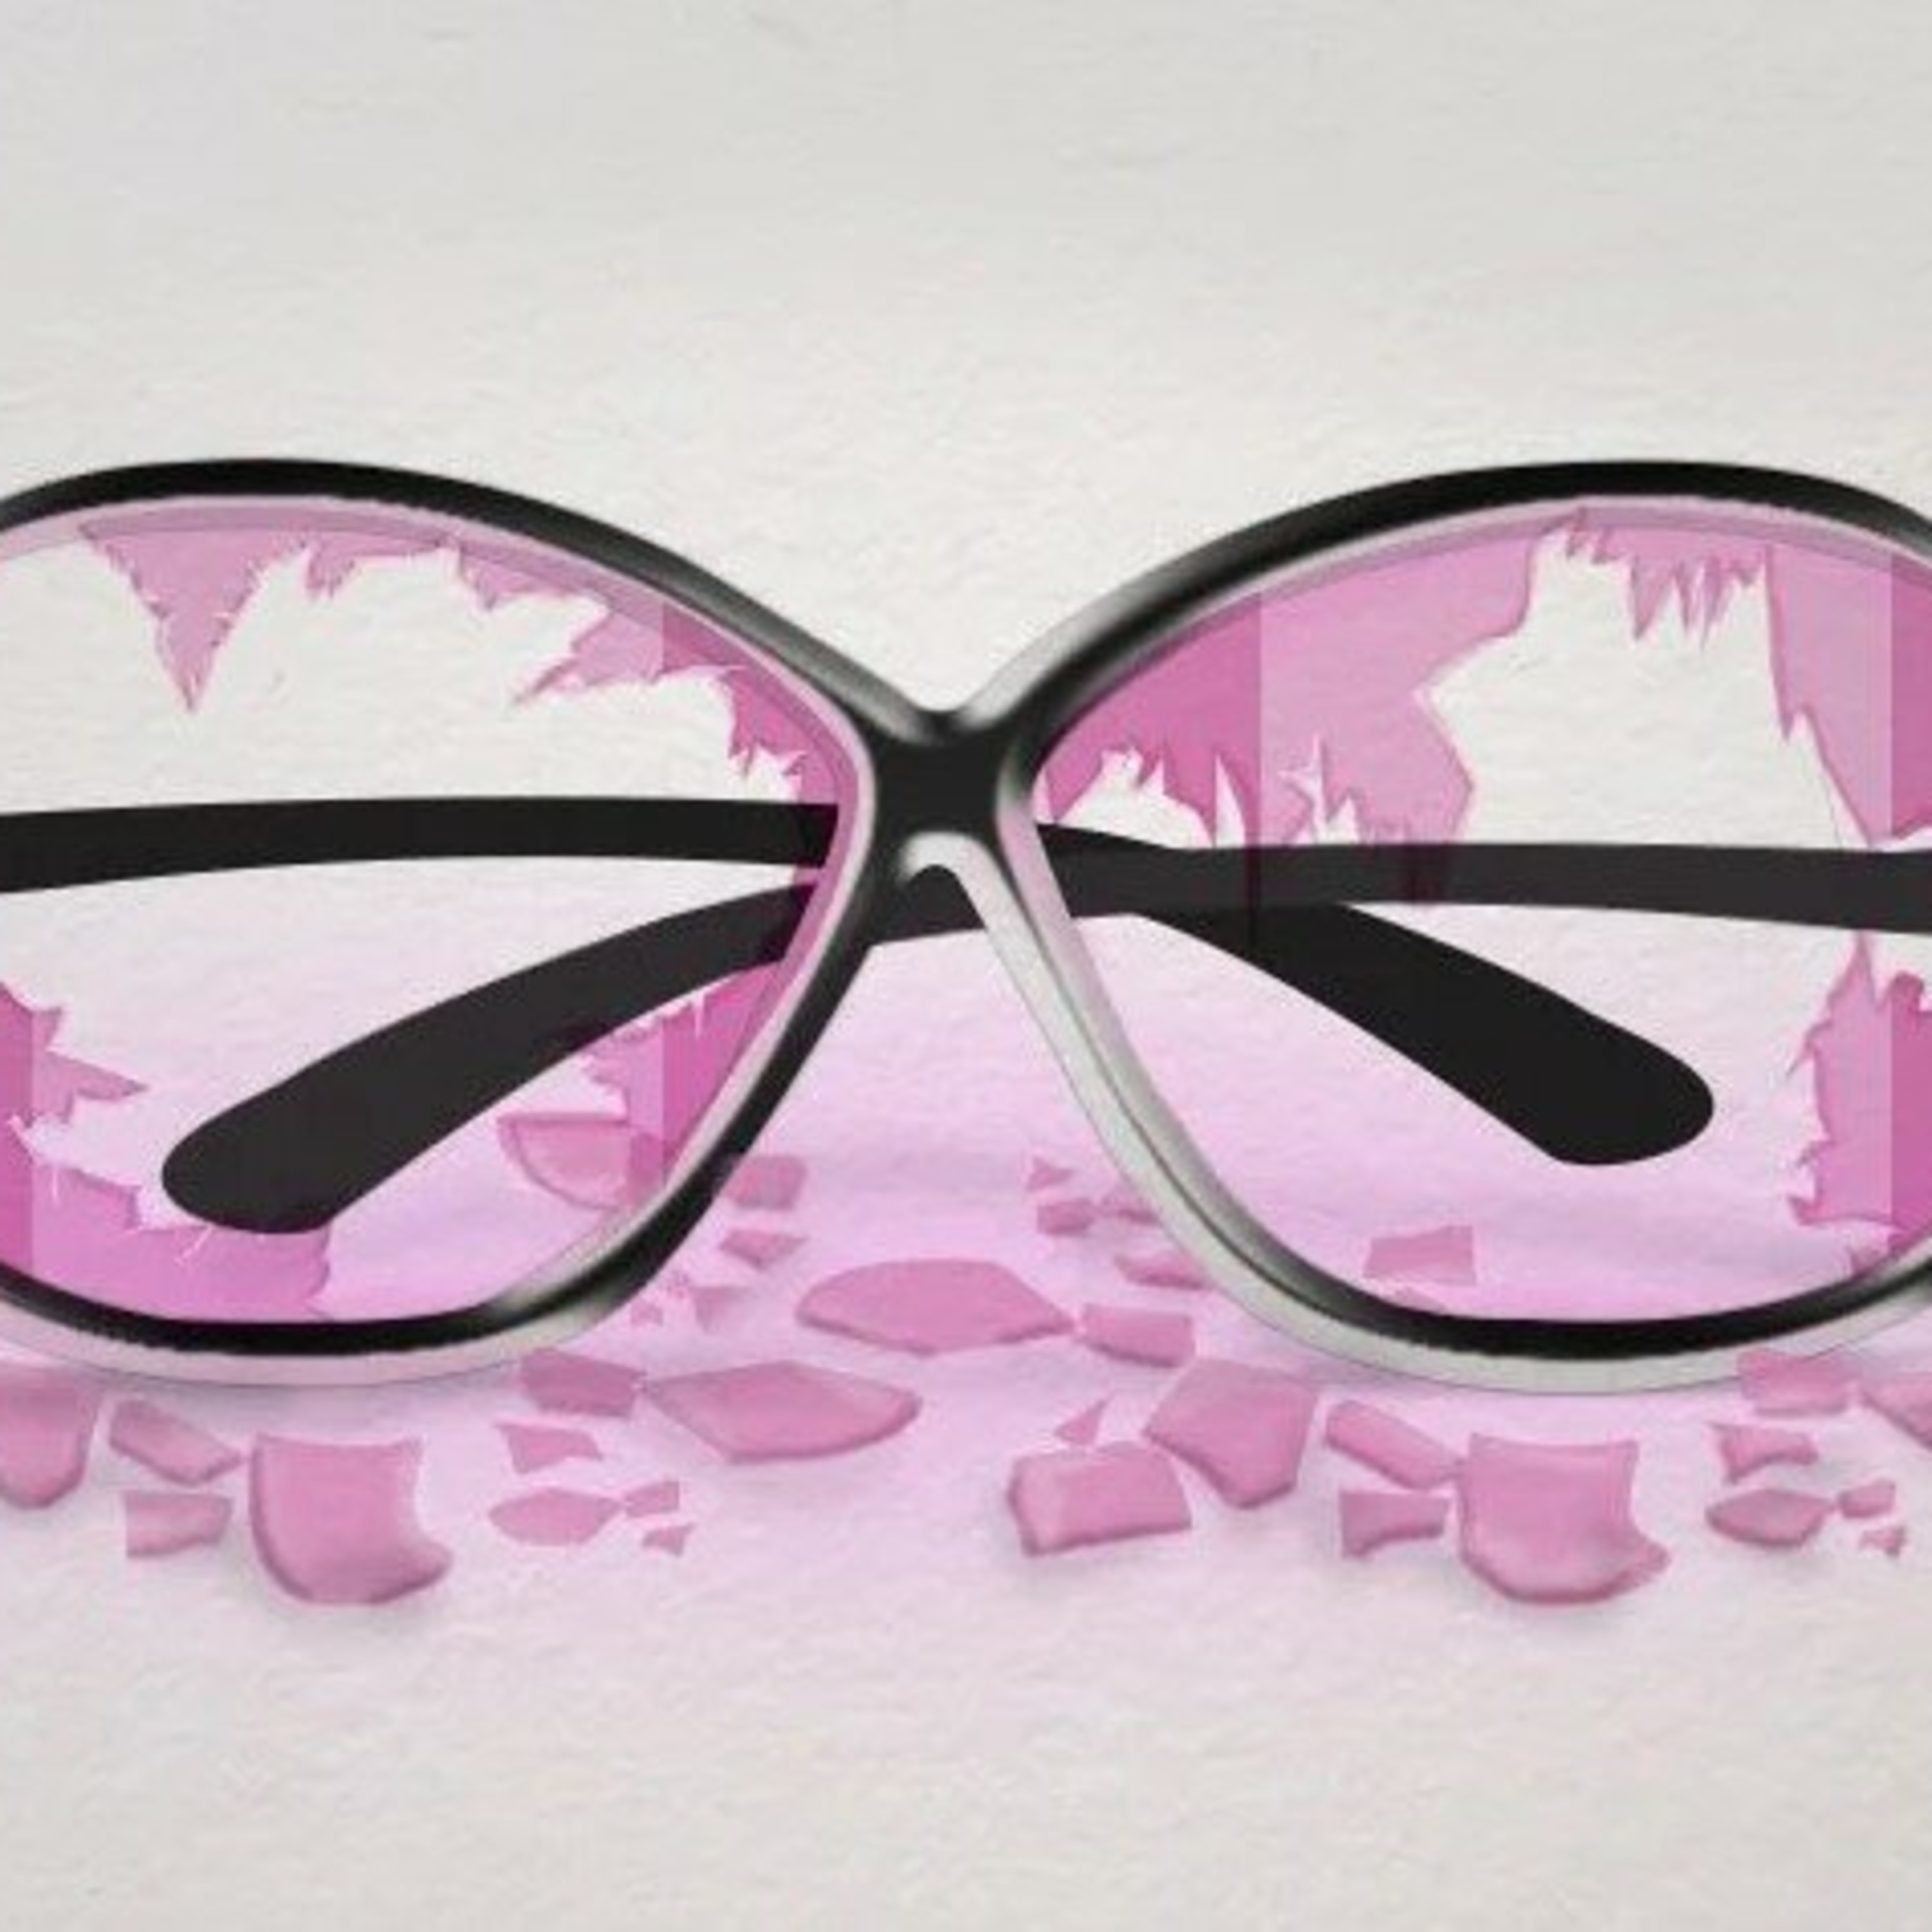 Розовые очки бьются стеклами во внутрь